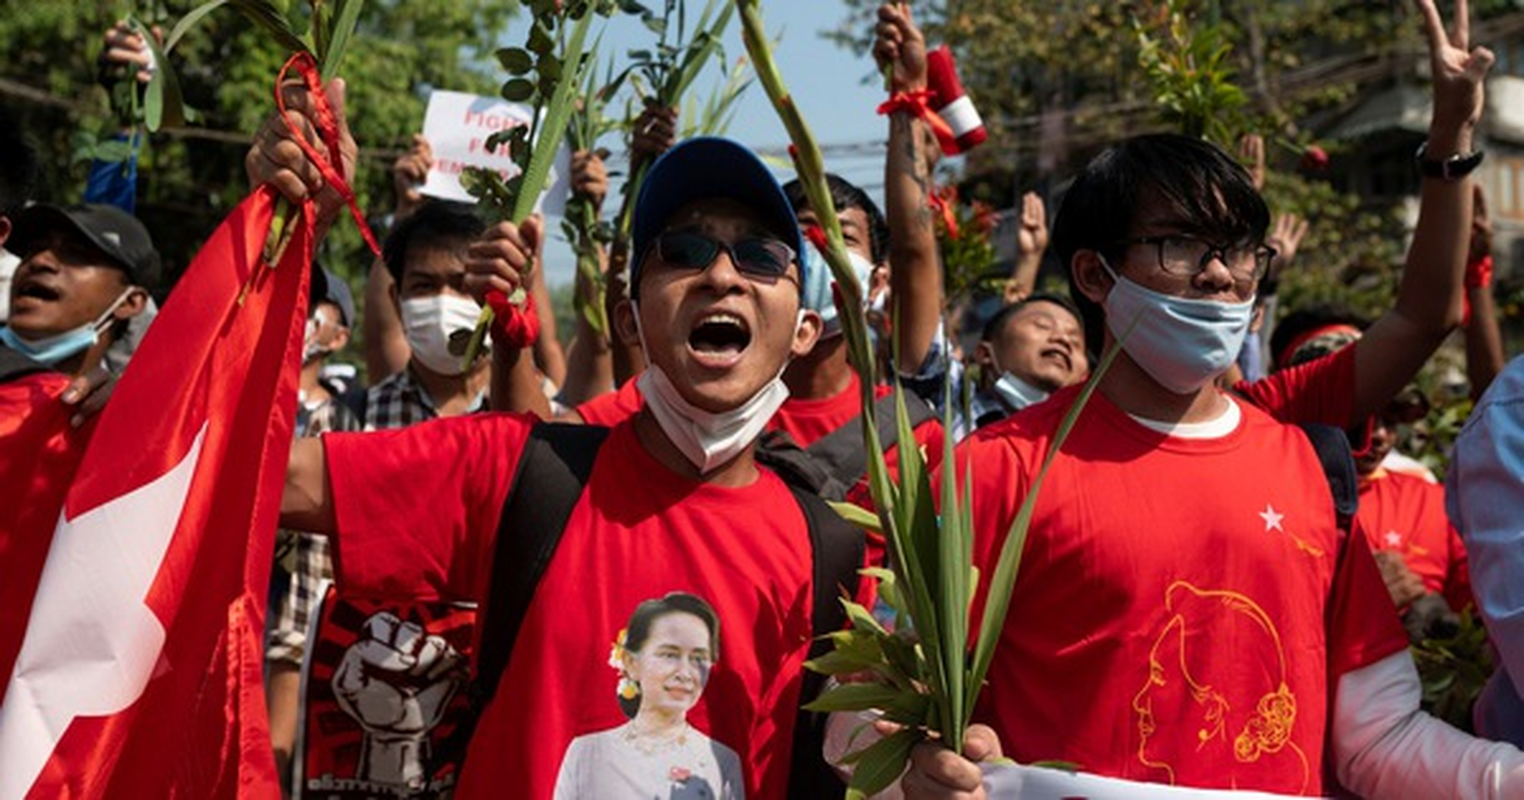 Facebook ngung hoat dong o Myanmar do bien co chinh tri-Hinh-5